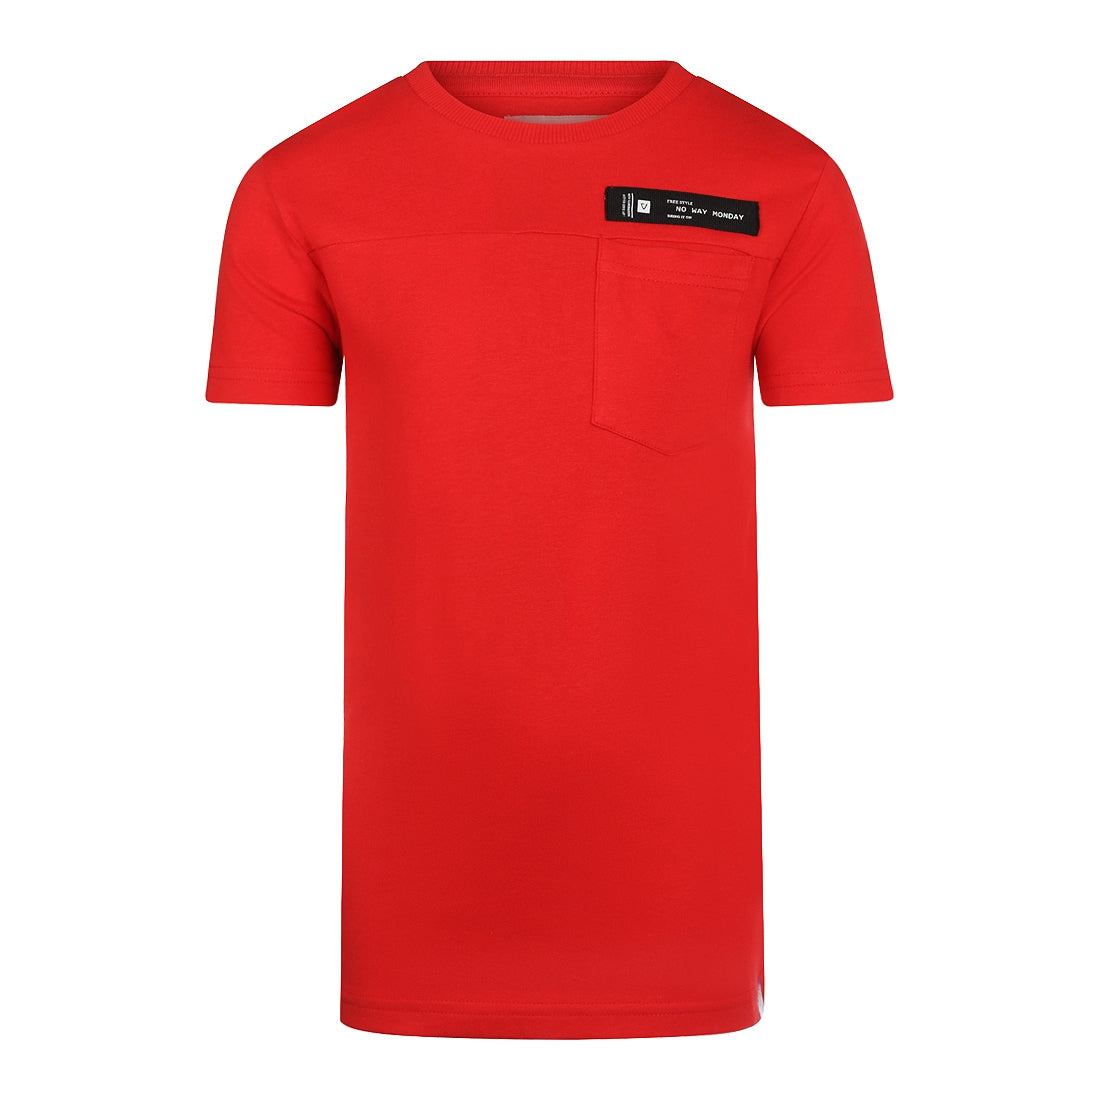 Jongens T-shirt ss van No Way Monday in de kleur Red in maat 164.